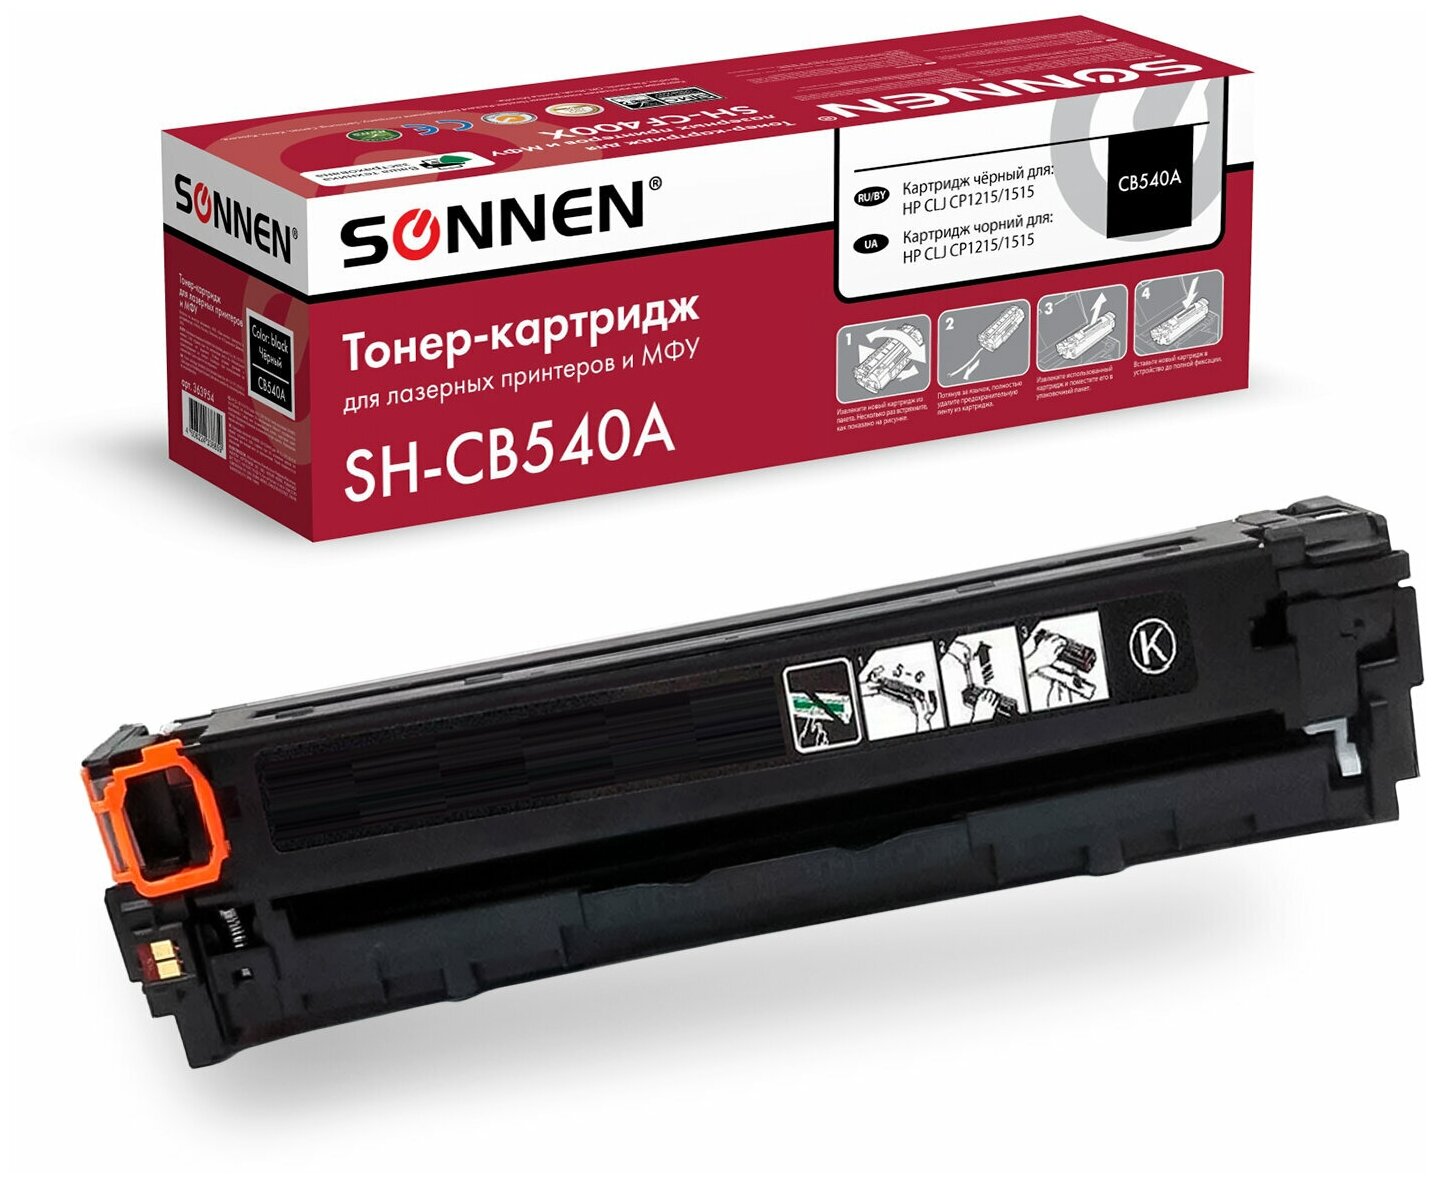 Картридж для лазерных принтеров Sonnen SH-CB540A для HP CLJ CP1215, 1515, черный, 2200 стр (363954)